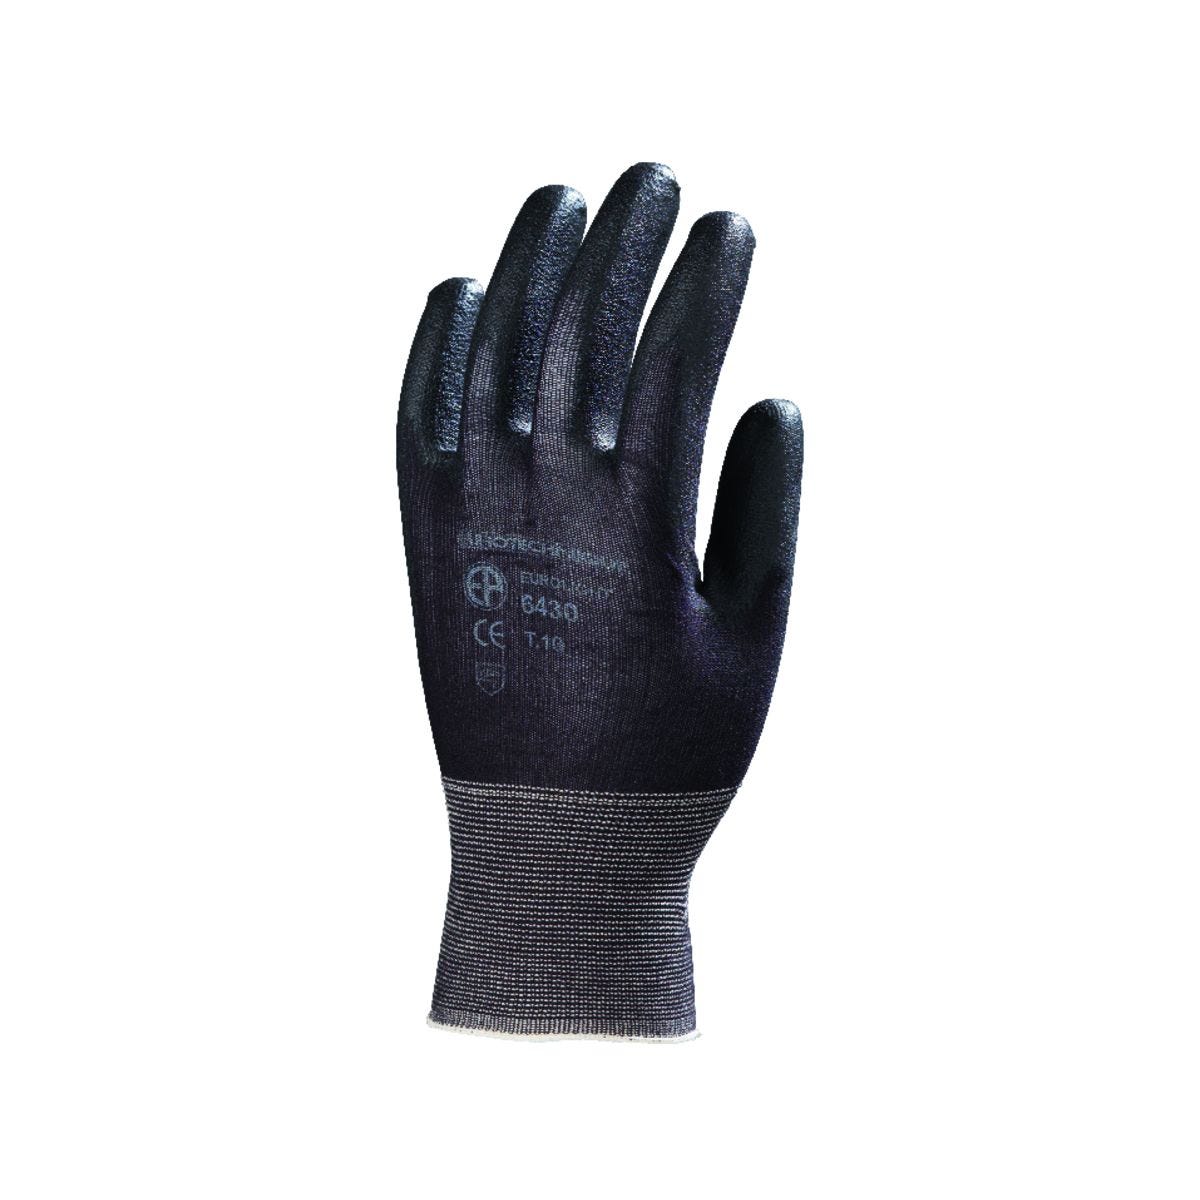 Gants EUROLIGHT nylon noir paume enduite PU noir - COVERGUARD - Taille XS-6 0